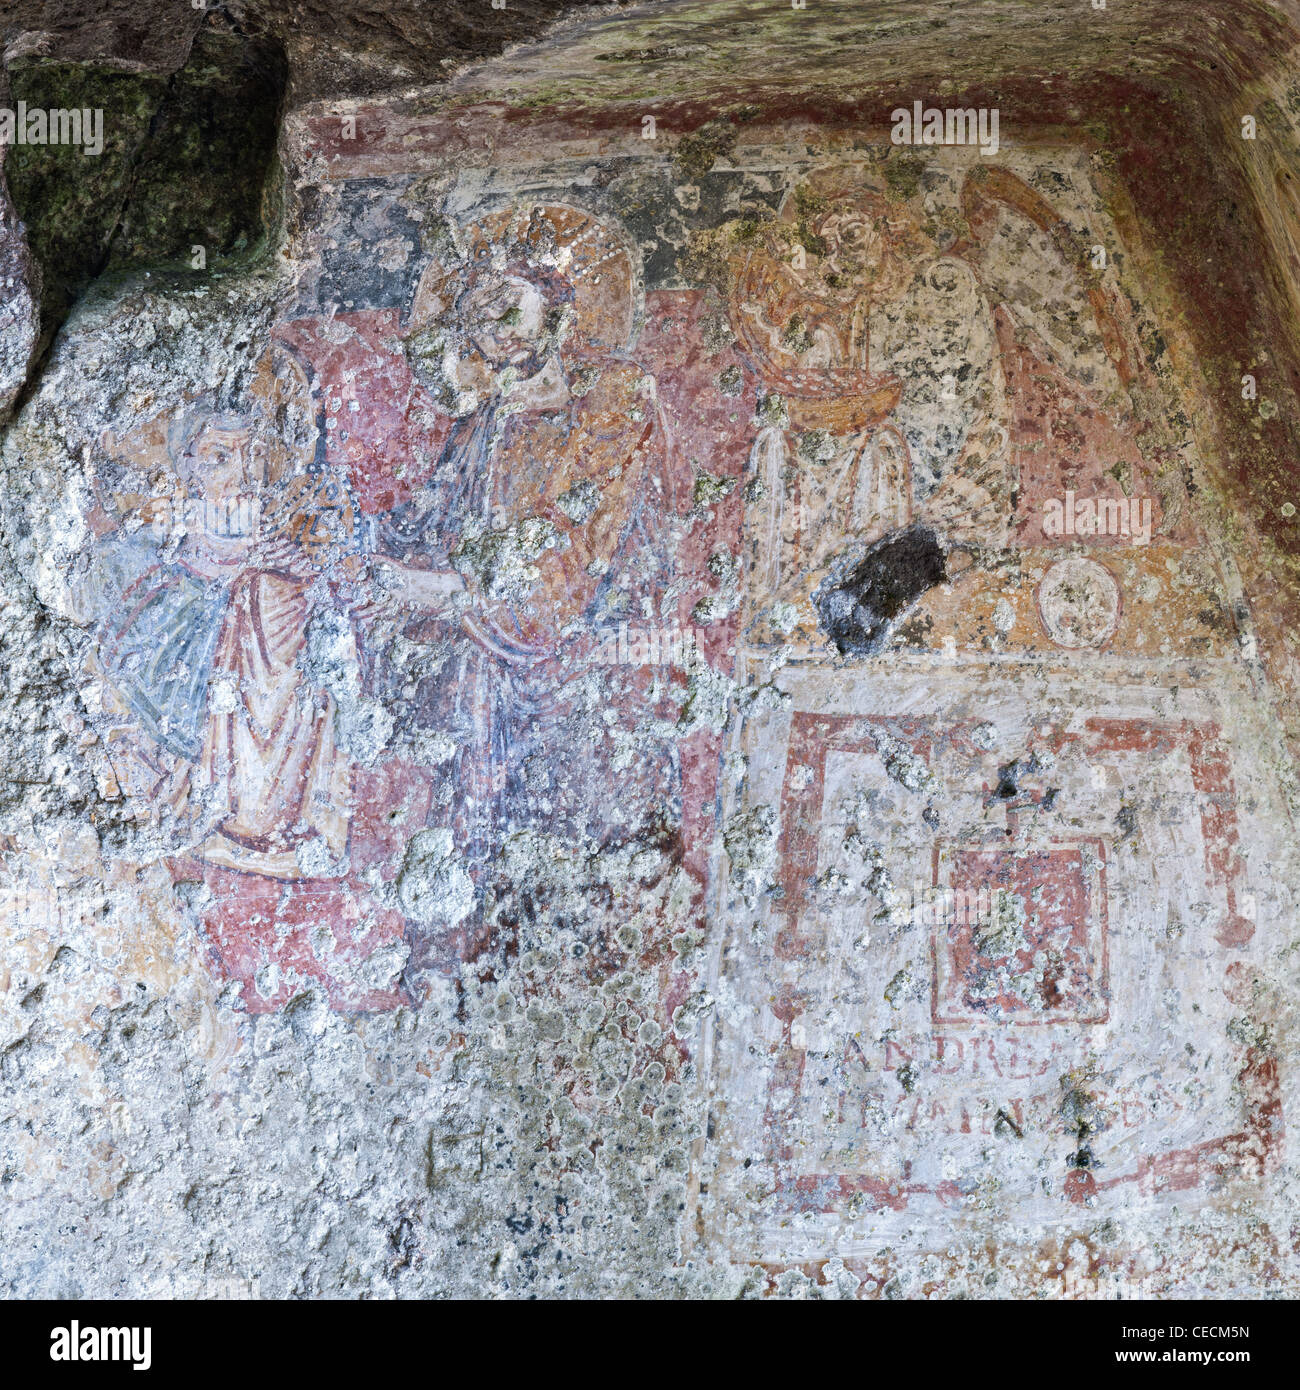 Grotta del santo Salvatore e resti di affreschi bizantini a Vallerano, Italia centrale. Foto Stock